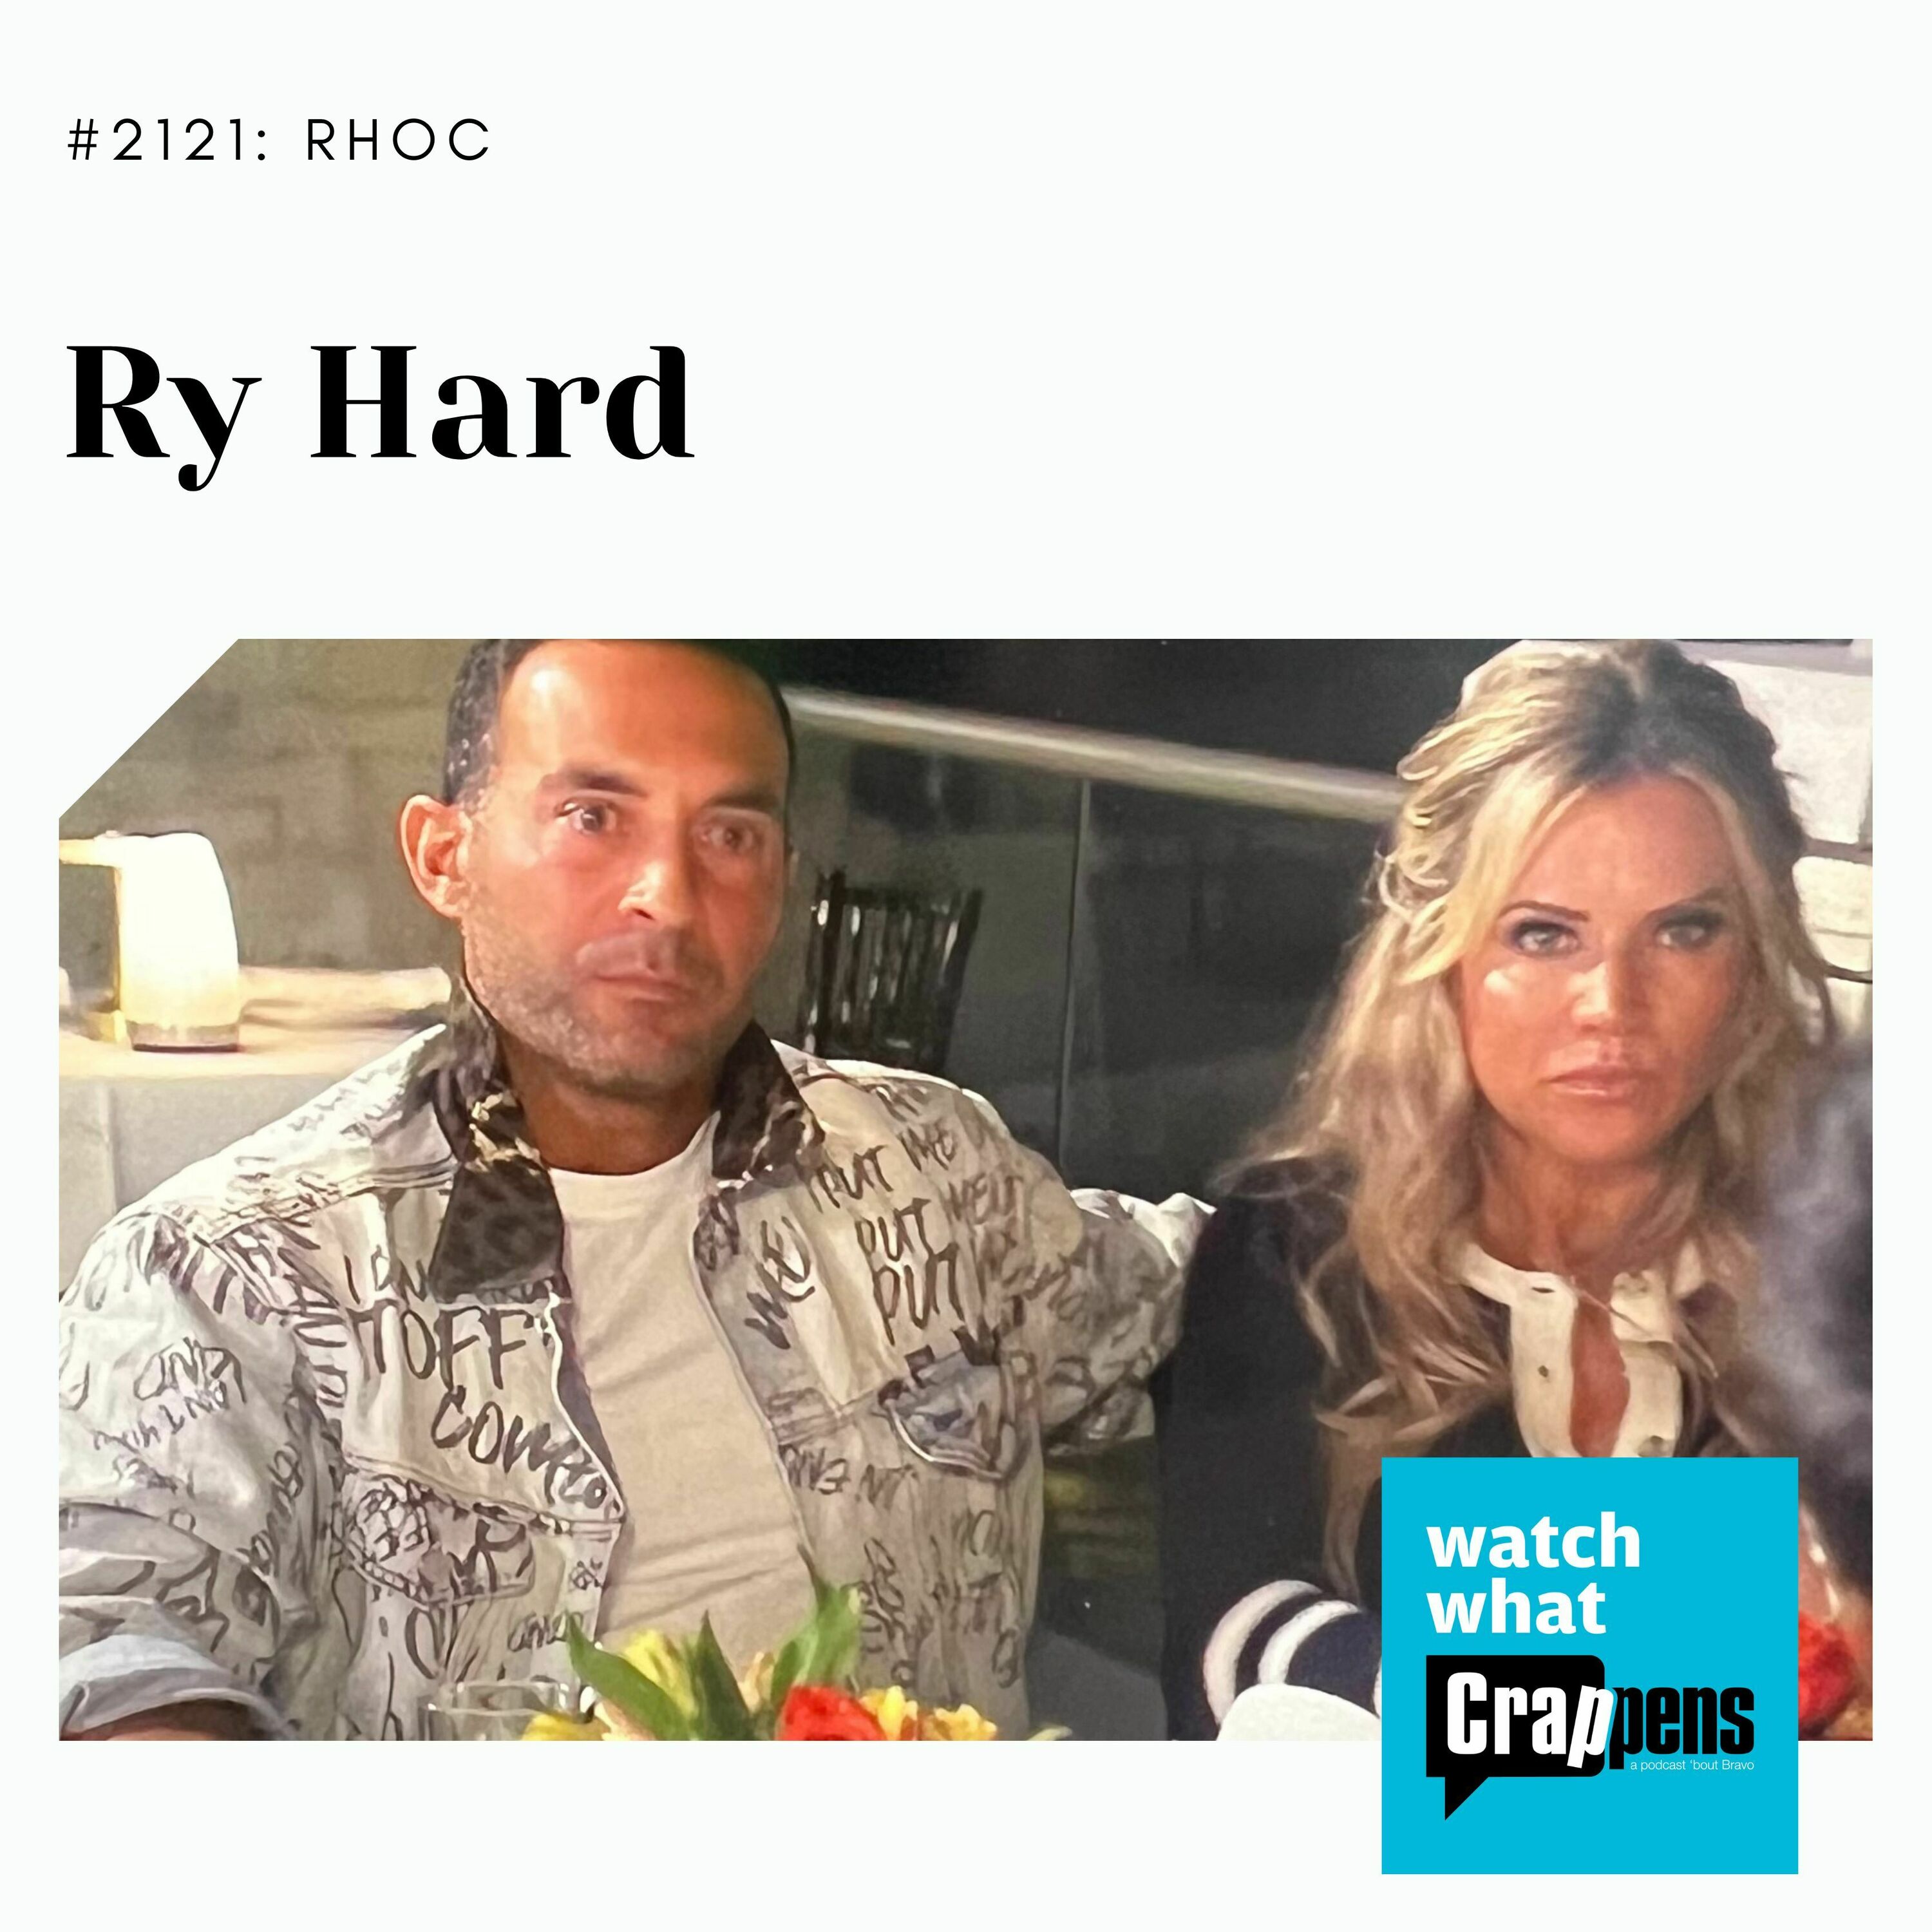 RHOC: Ry Hard